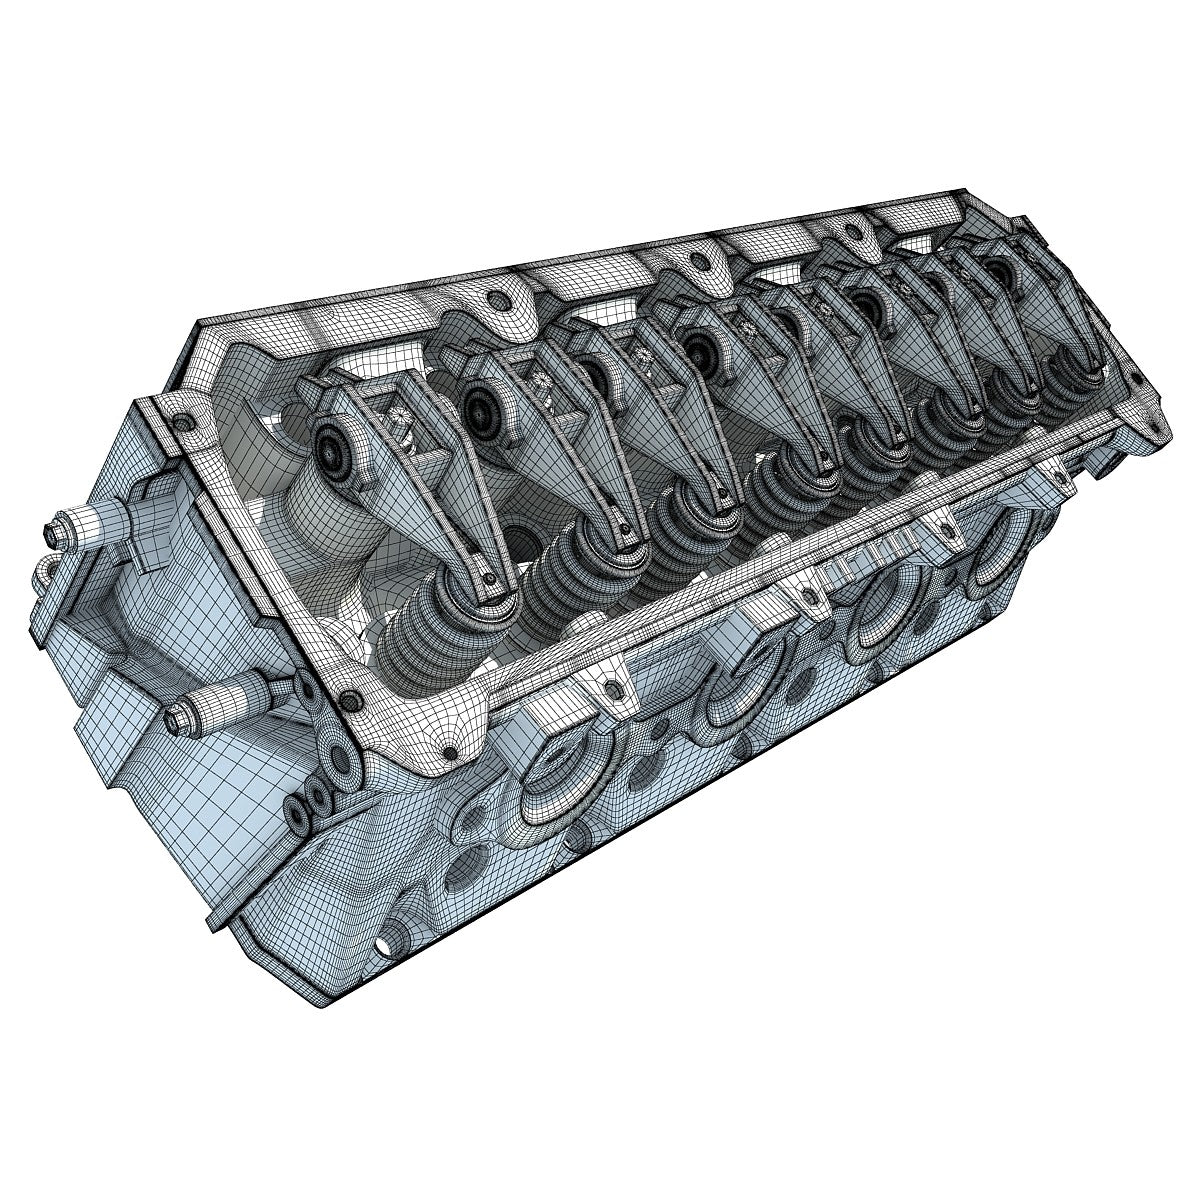 Engine Fuel System 3D Model